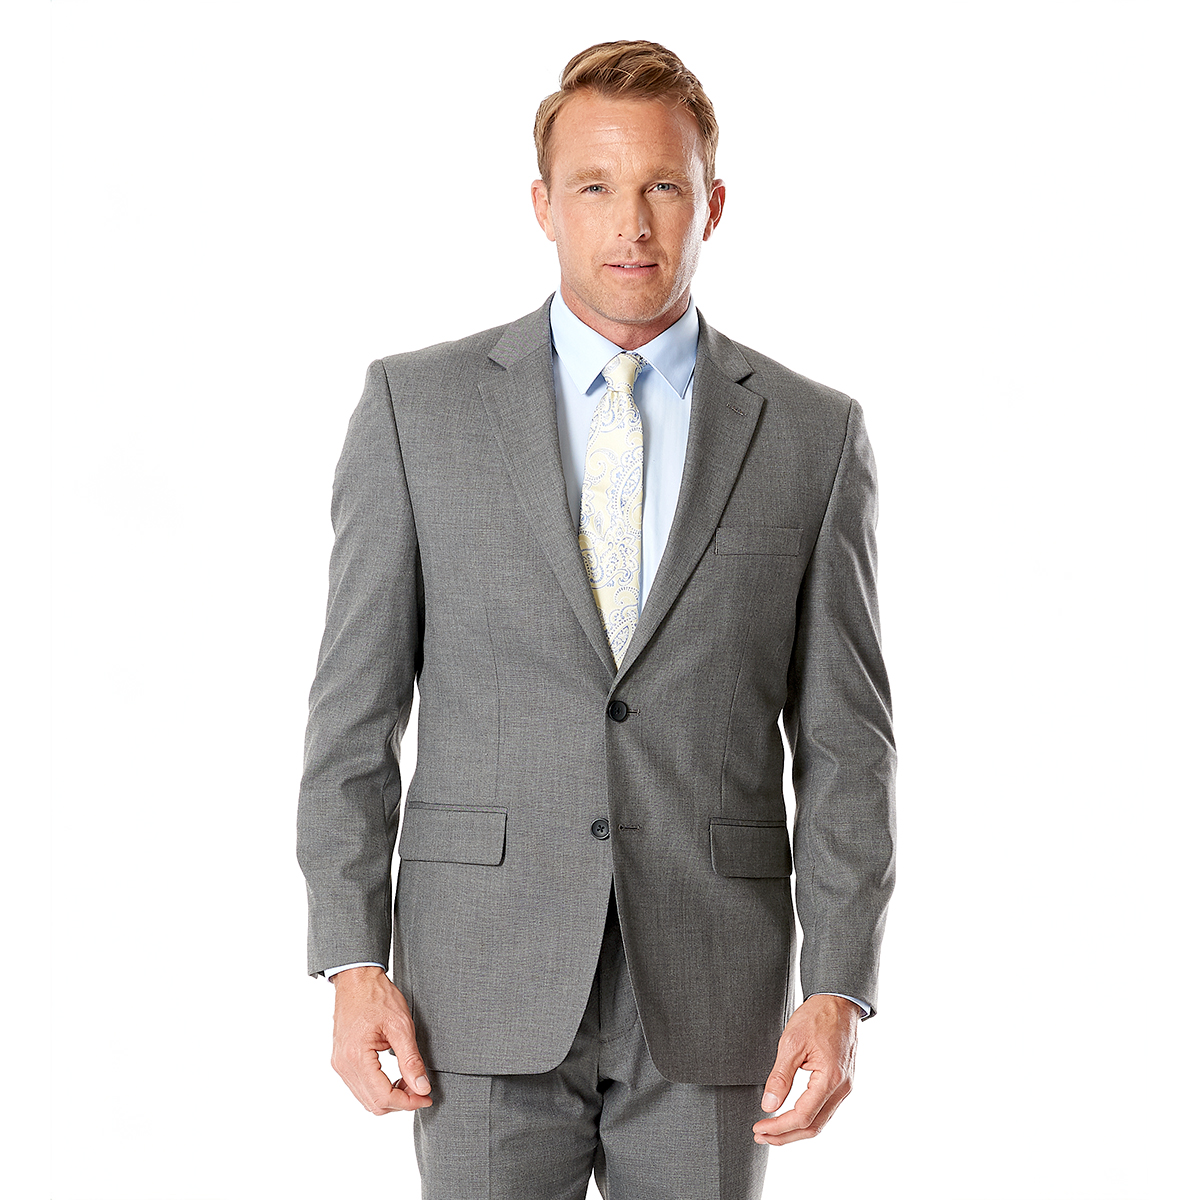 J.M. Haggar(tm) Premium Stretch Solid Suit Separate Jacket